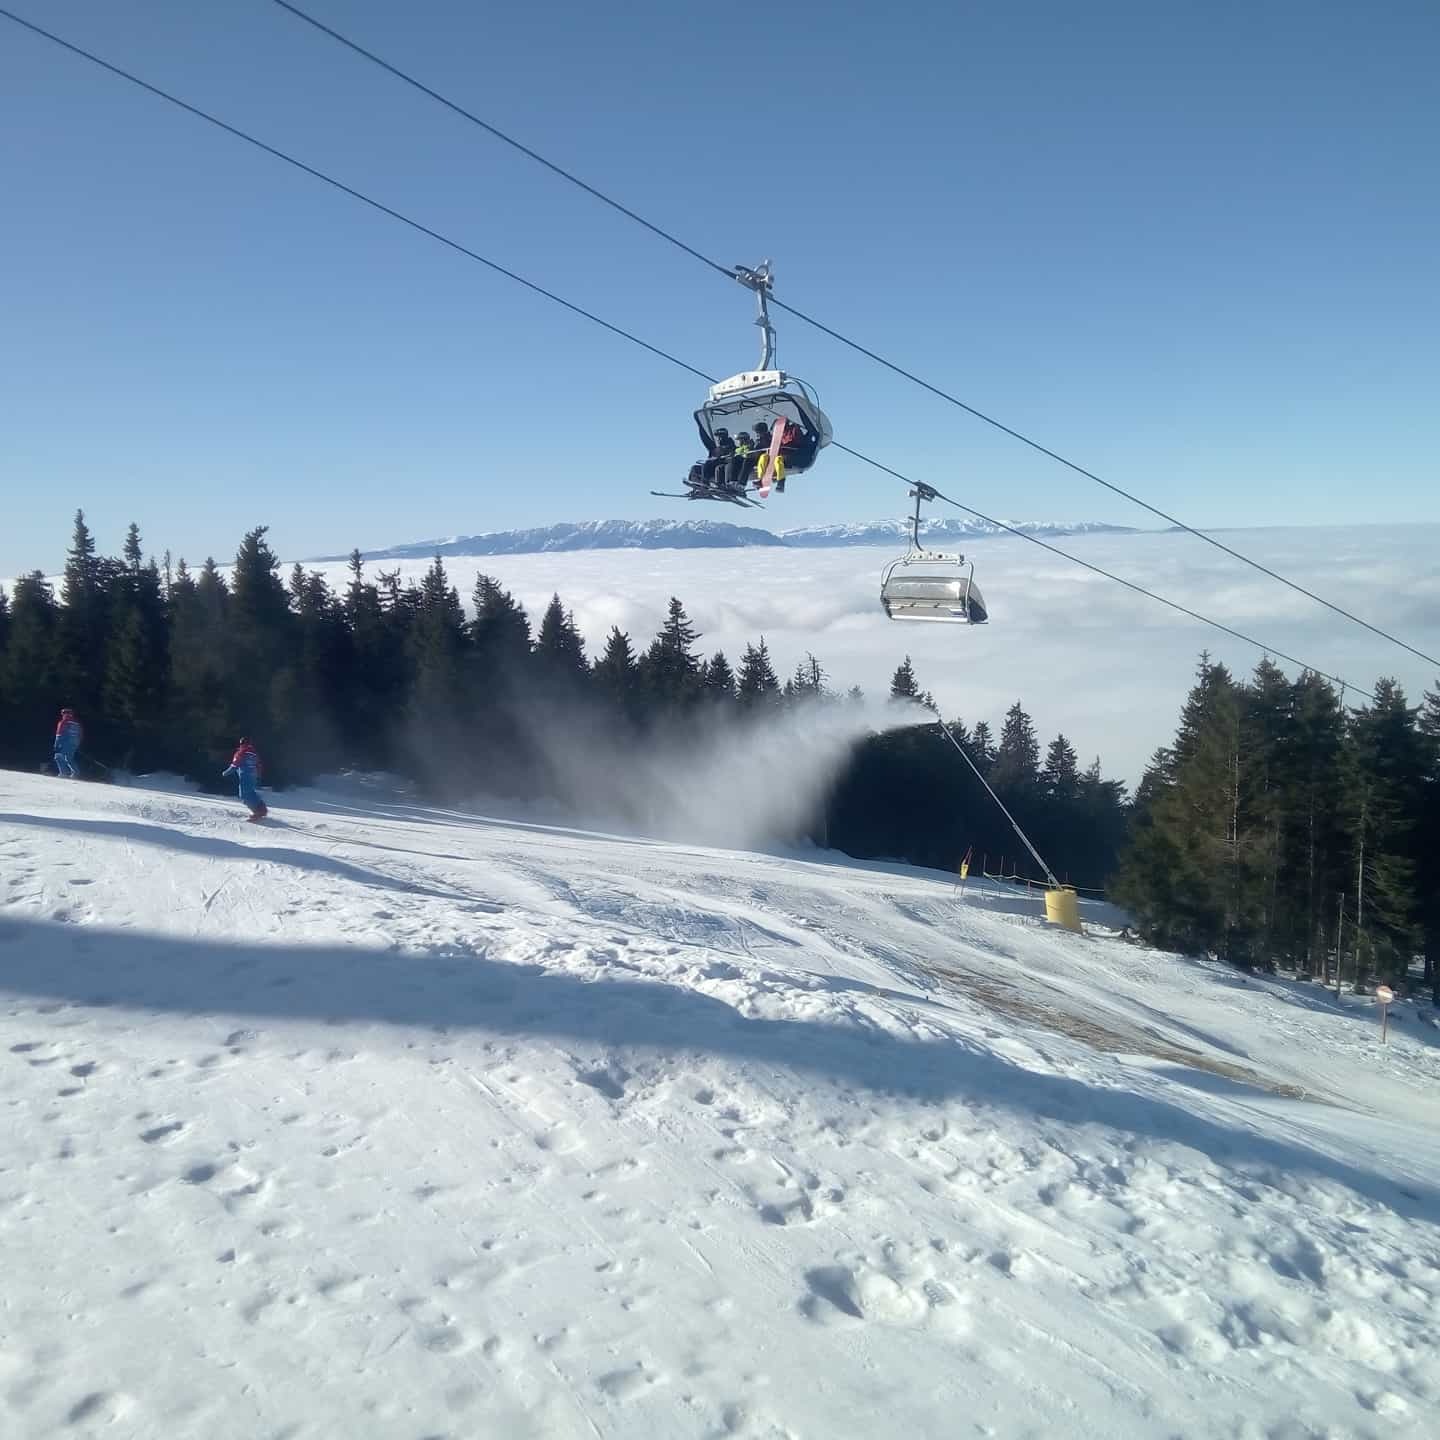 Cât costă să mergi la schi în România